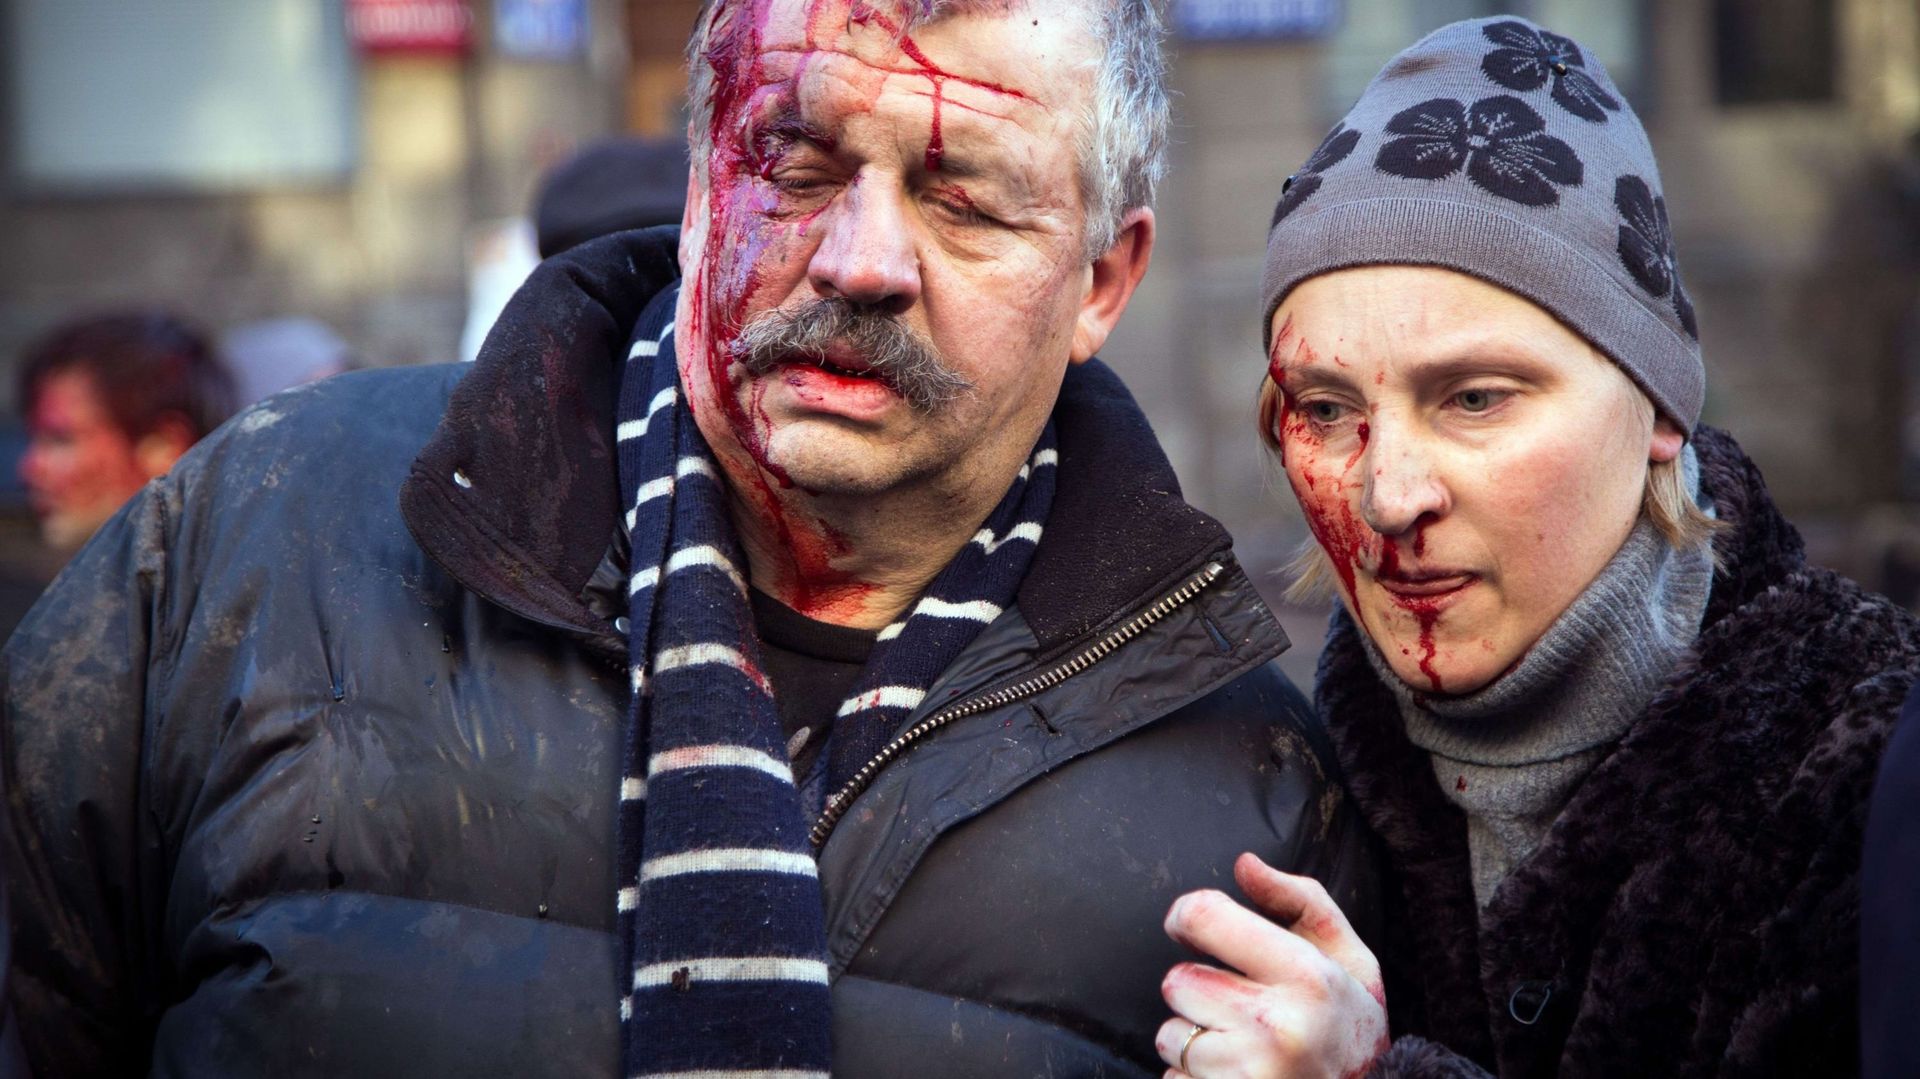 Des manifestants blessés après des affrontements avec les forces de l'ordre, à Kiev